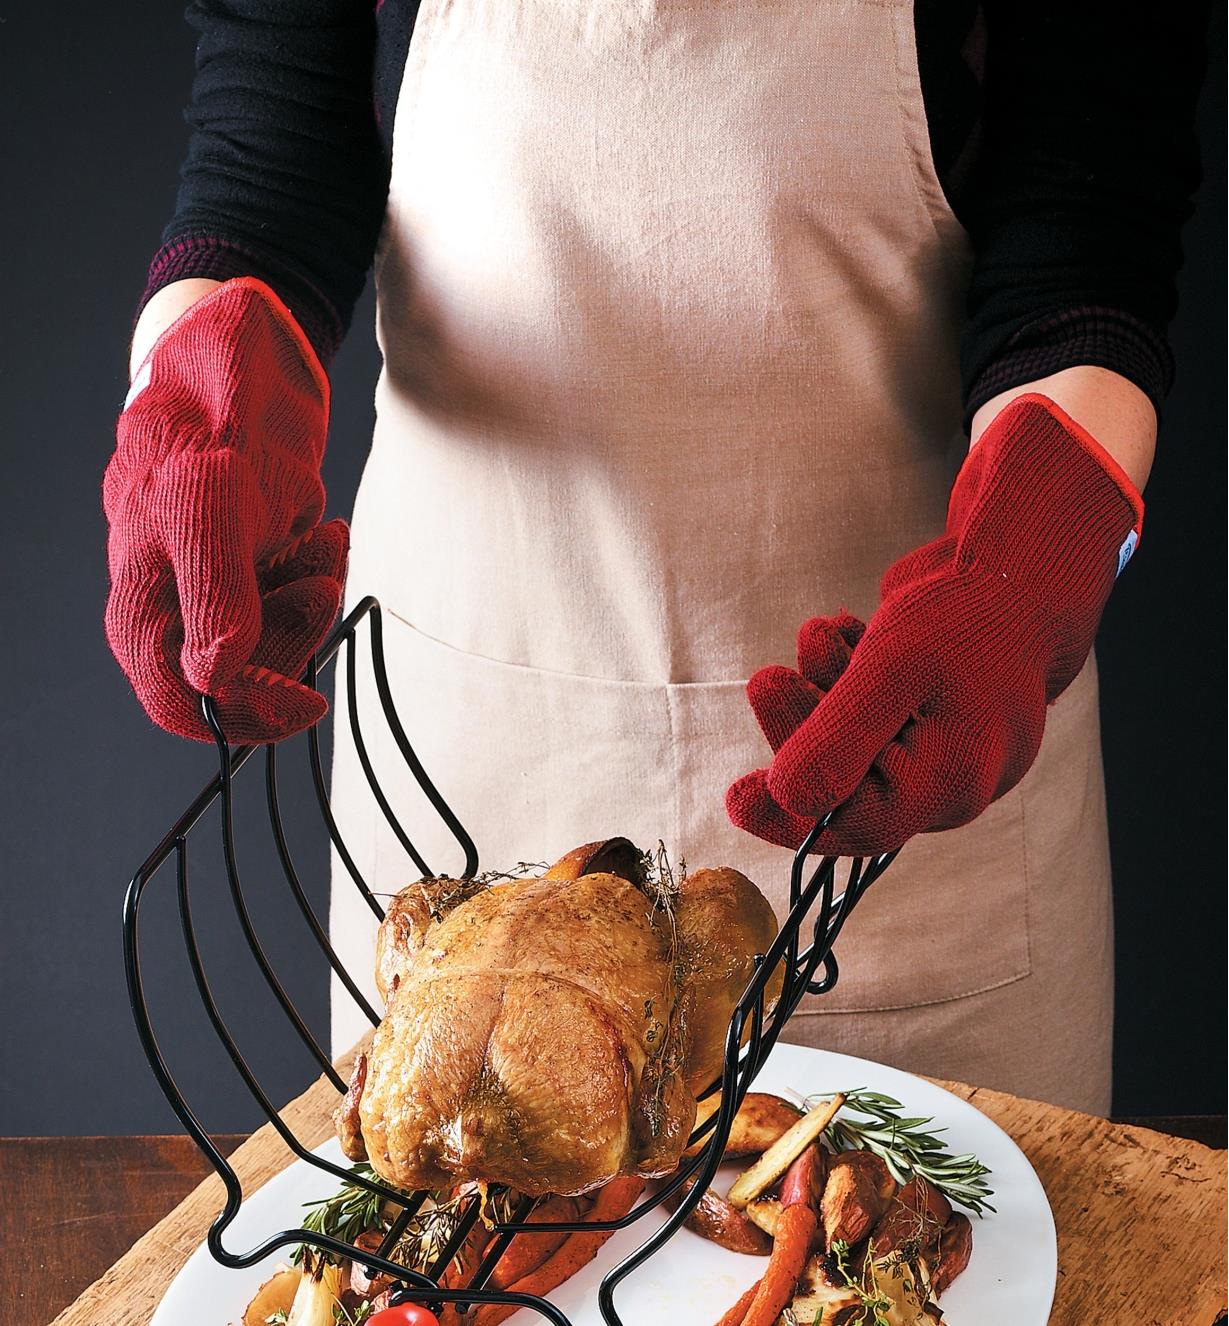 Mains protégées par les gants de cuisine lors du transfert d'un poulet rôti du plat dans une assiette